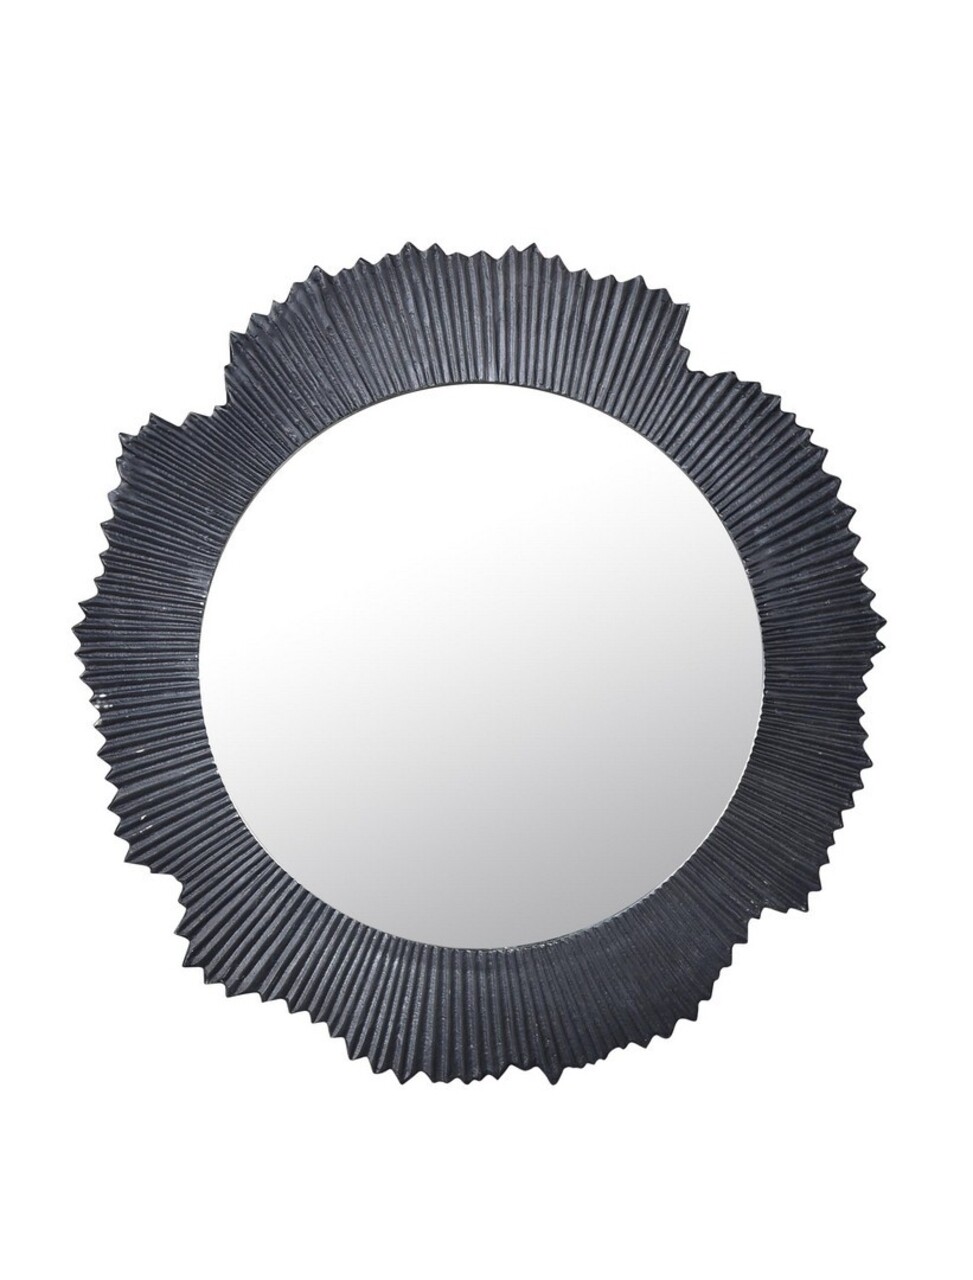 Oglinda Yamir, Bizzotto, Ø 62 cm, aluminiu/sticla, negru